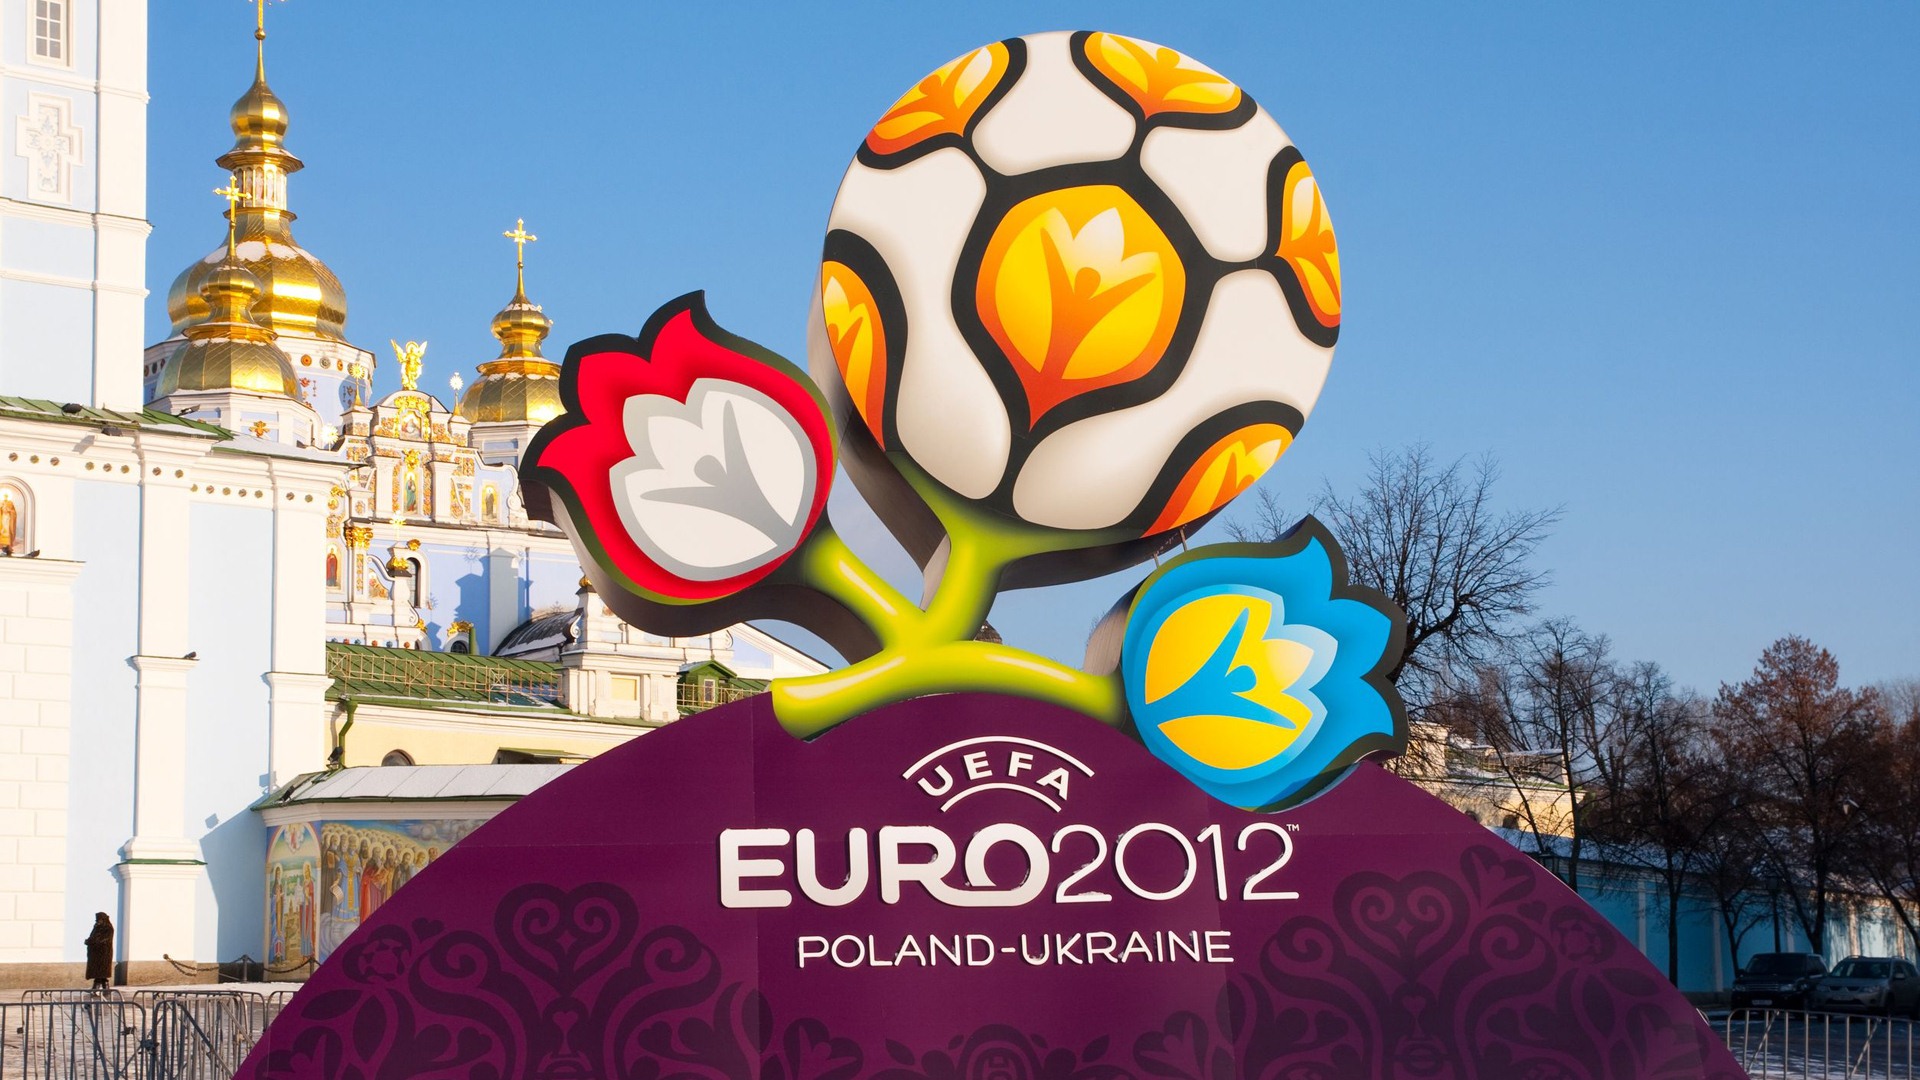 UEFA EURO 2012 欧洲足球锦标赛 高清壁纸(二)17 - 1920x1080